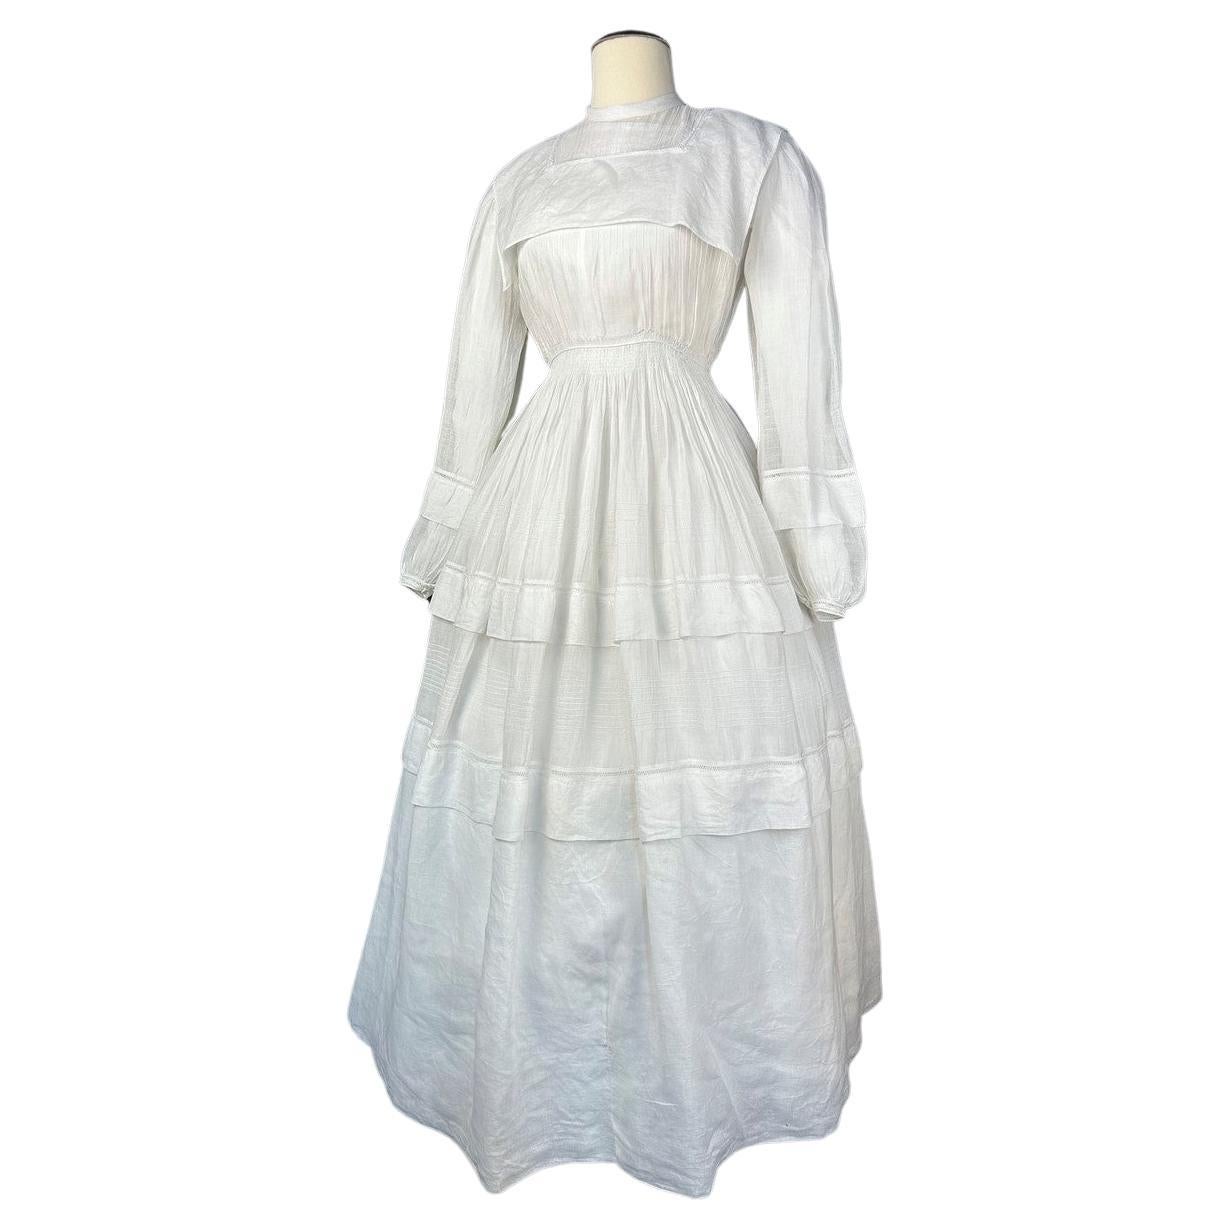 CIRCA 1855
Frankreich oder Europa
Kostbares weißes Kleid aus Baumwollmusselin oder Organza mit runder Krinoline aus den Anfängen des Zweiten Kaiserreichs. Kleid mit Puffärmeln, gefalteten Falten und im Rücken mit kleinen Perlmuttknöpfen geschlossen.